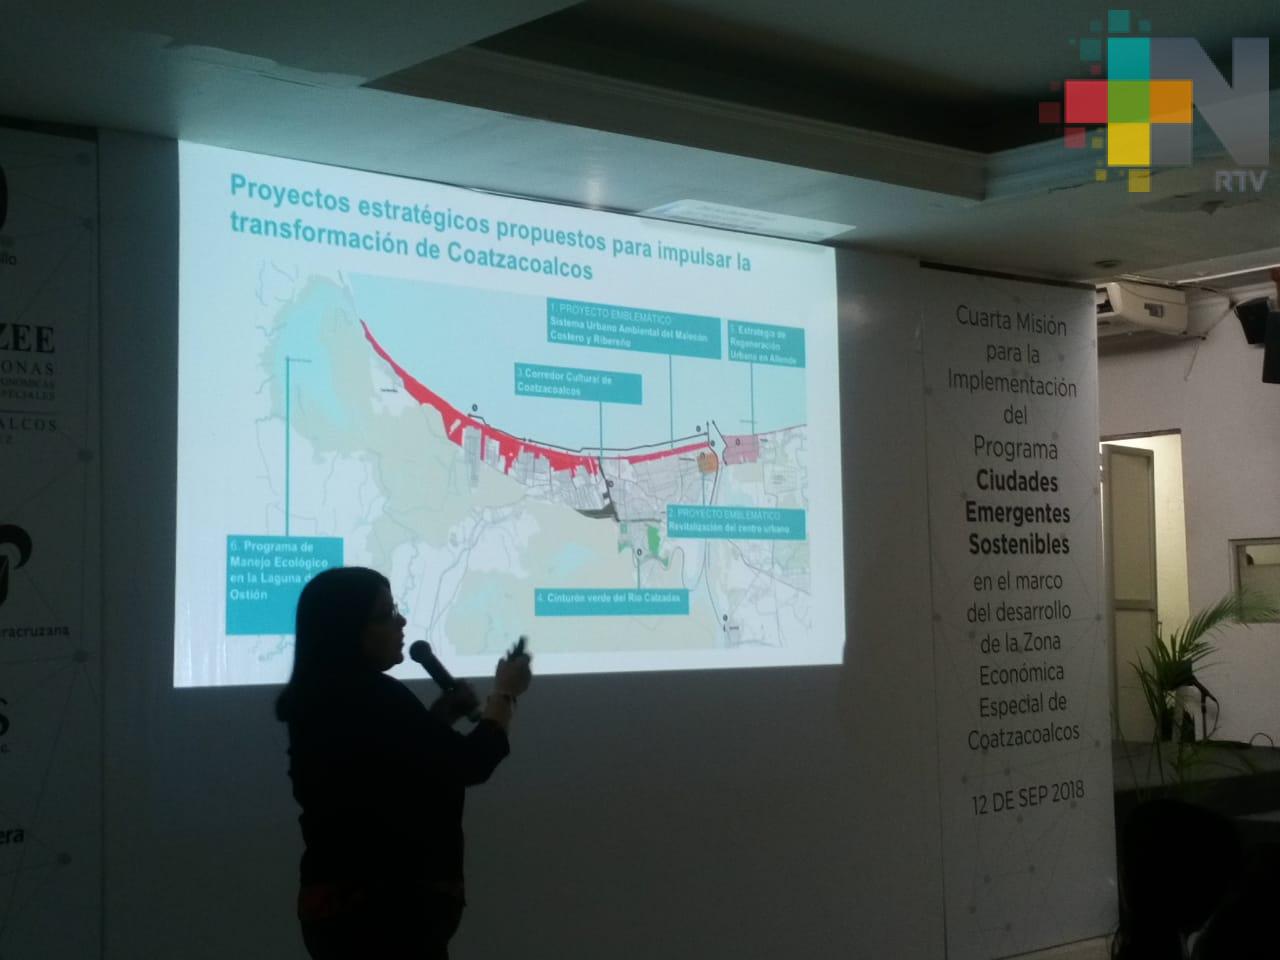 Realizan cuarta misión del programa Ciudades Emergentes Sostenibles en Coatzacoalcos